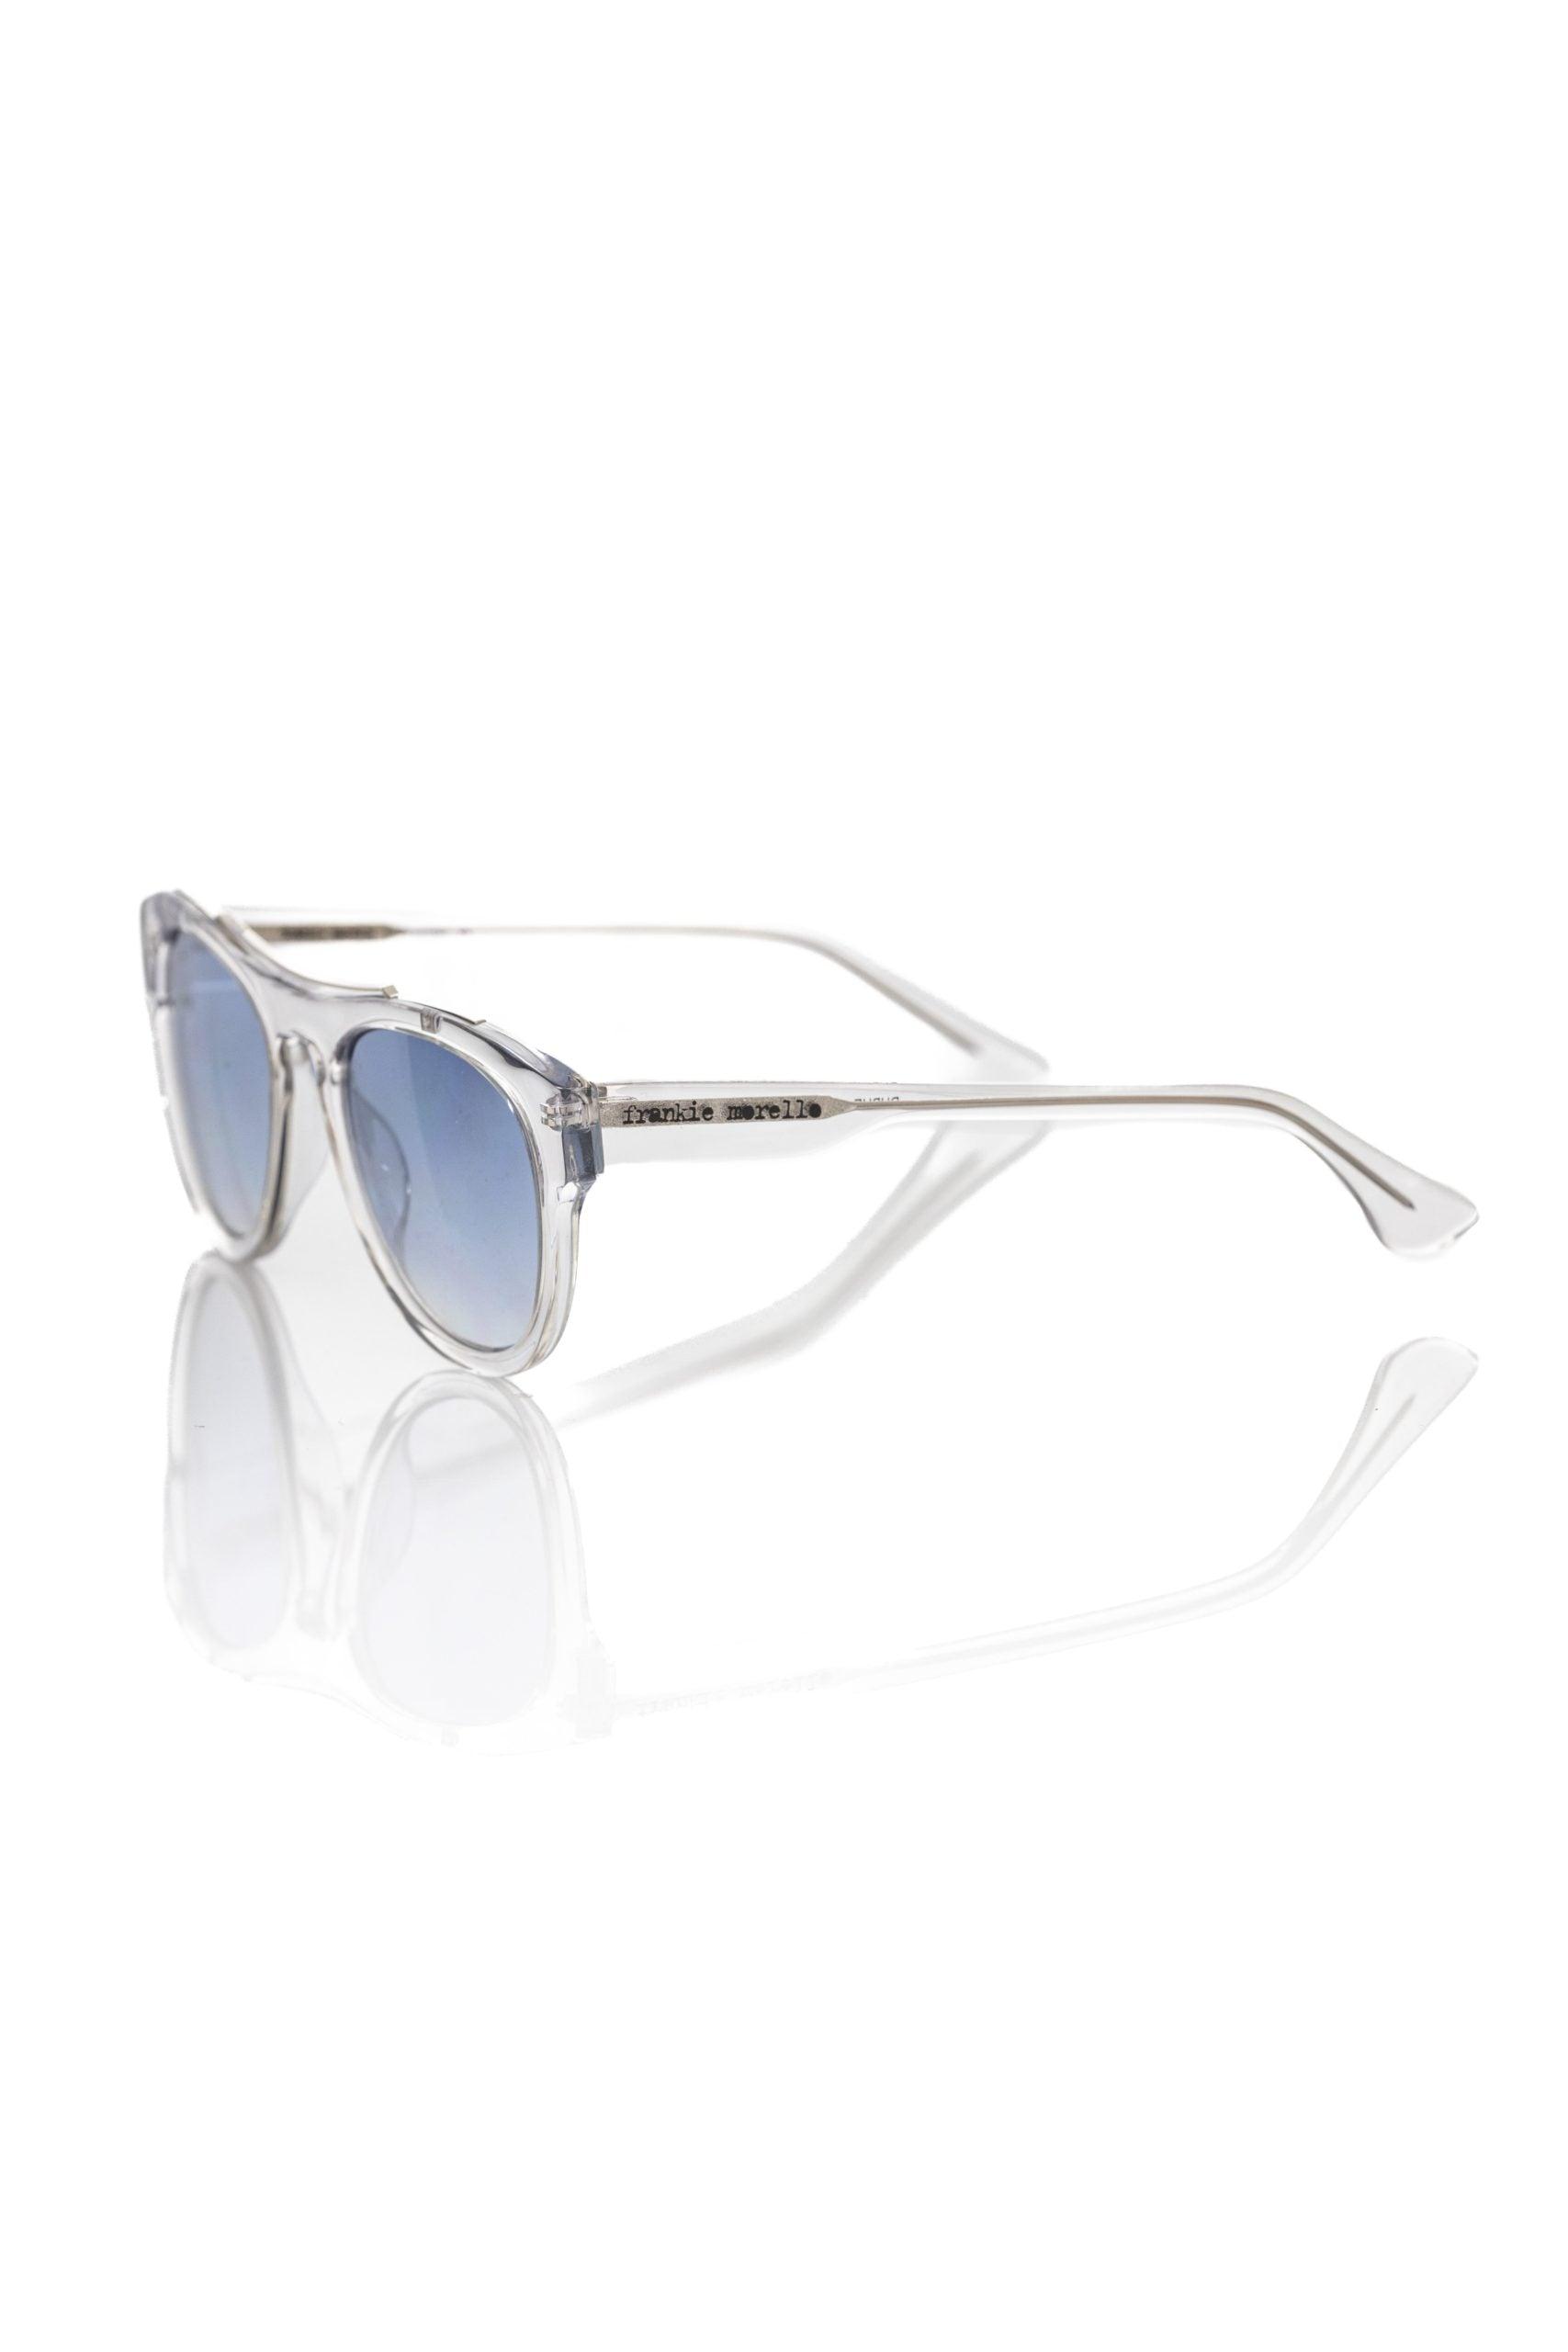 Frankie Morello Sunglasses For Man in Blue for Men | Lyst